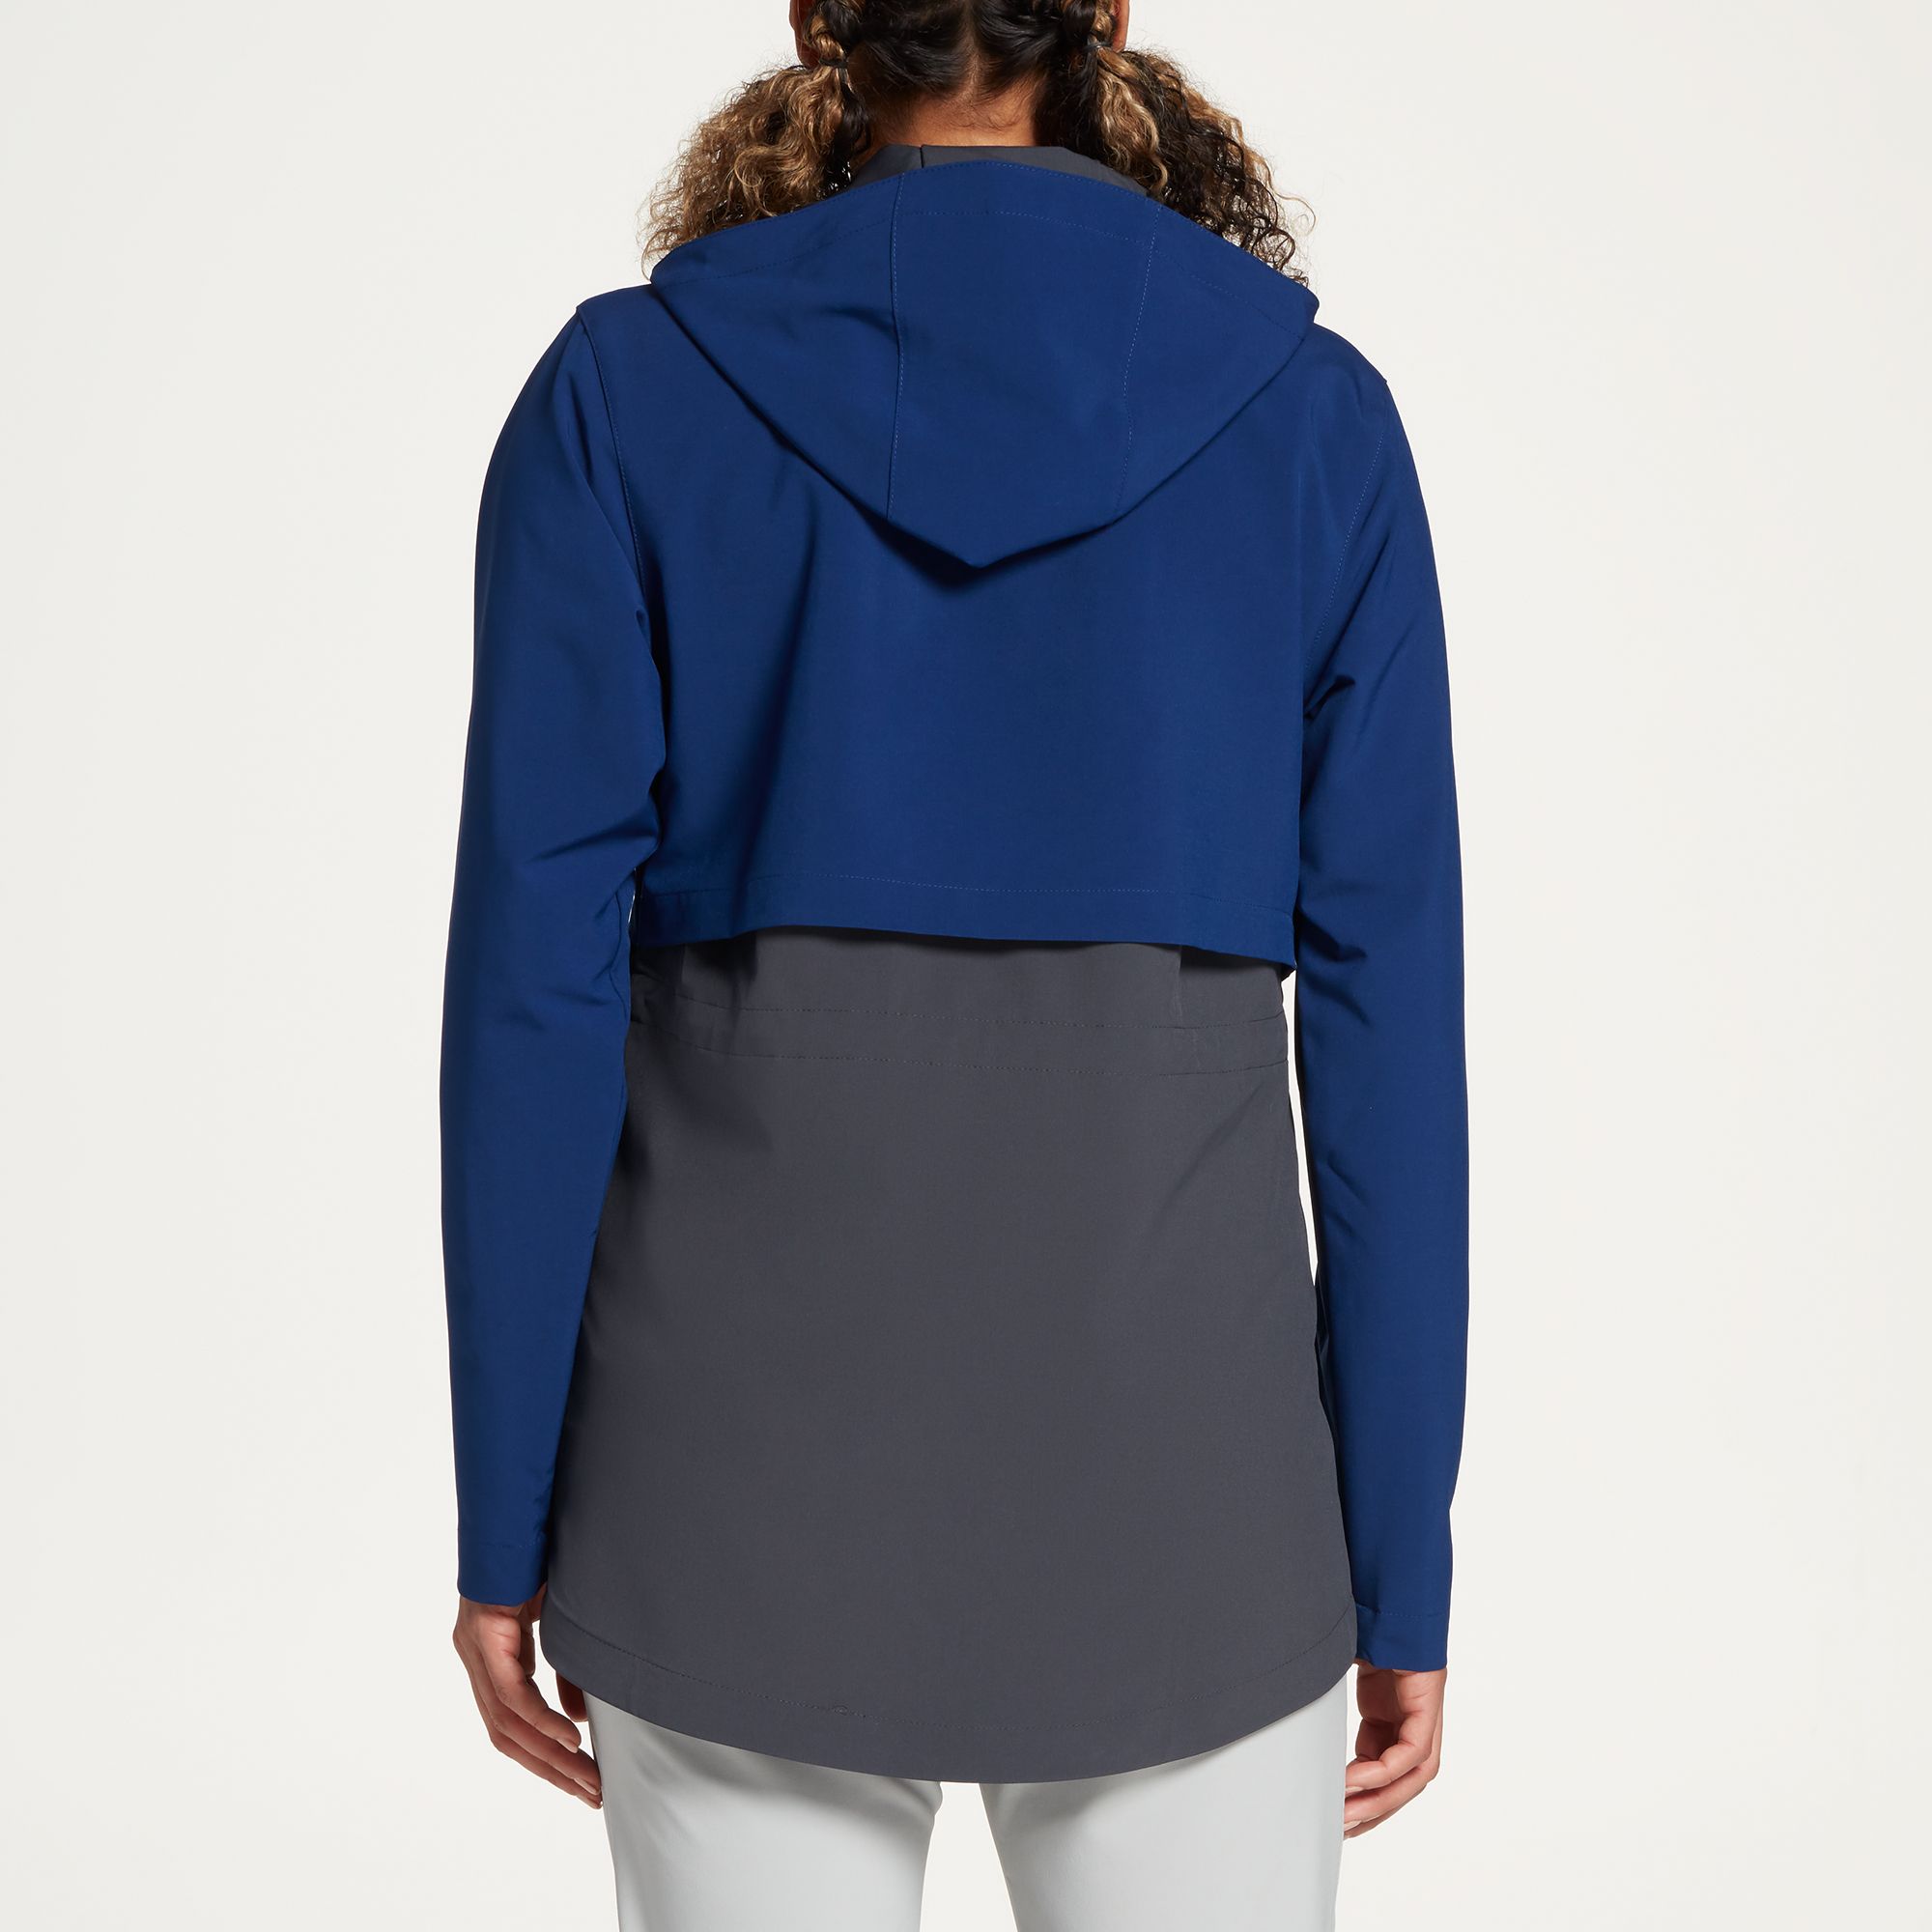 women's windcheater jacket online